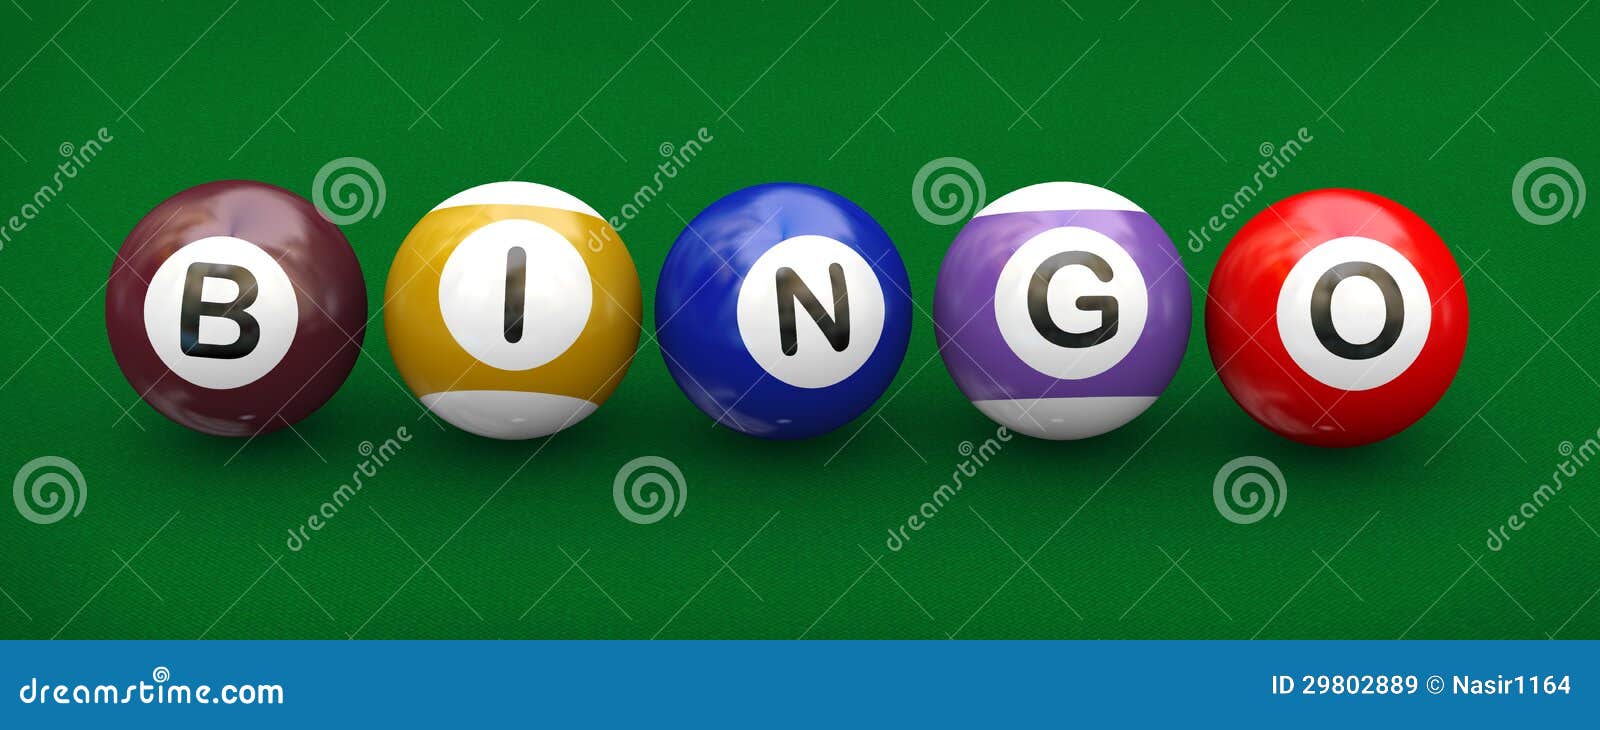 Bingo Das Bolas De Associação Do Bilhar 3d Ilustração Stock - Ilustração de  jogo, idéia: 29802889